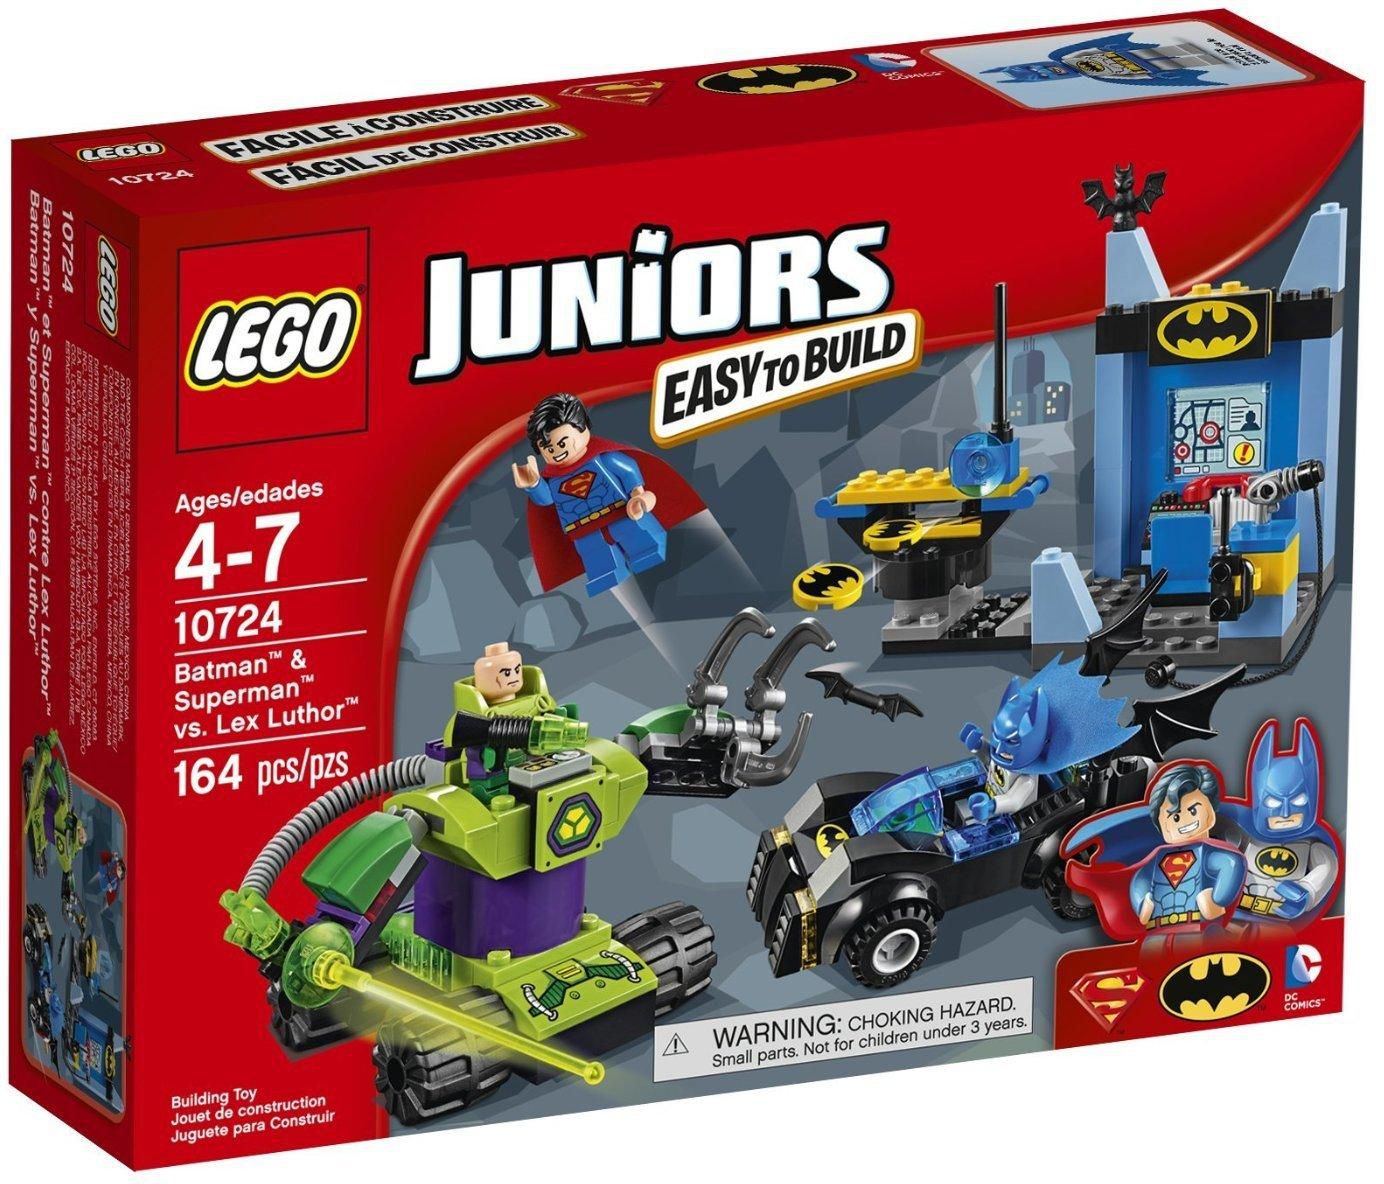 Lego Juniors 10724 Batman and Superman vs Lex Luthor Building Kit - 164 Pieces